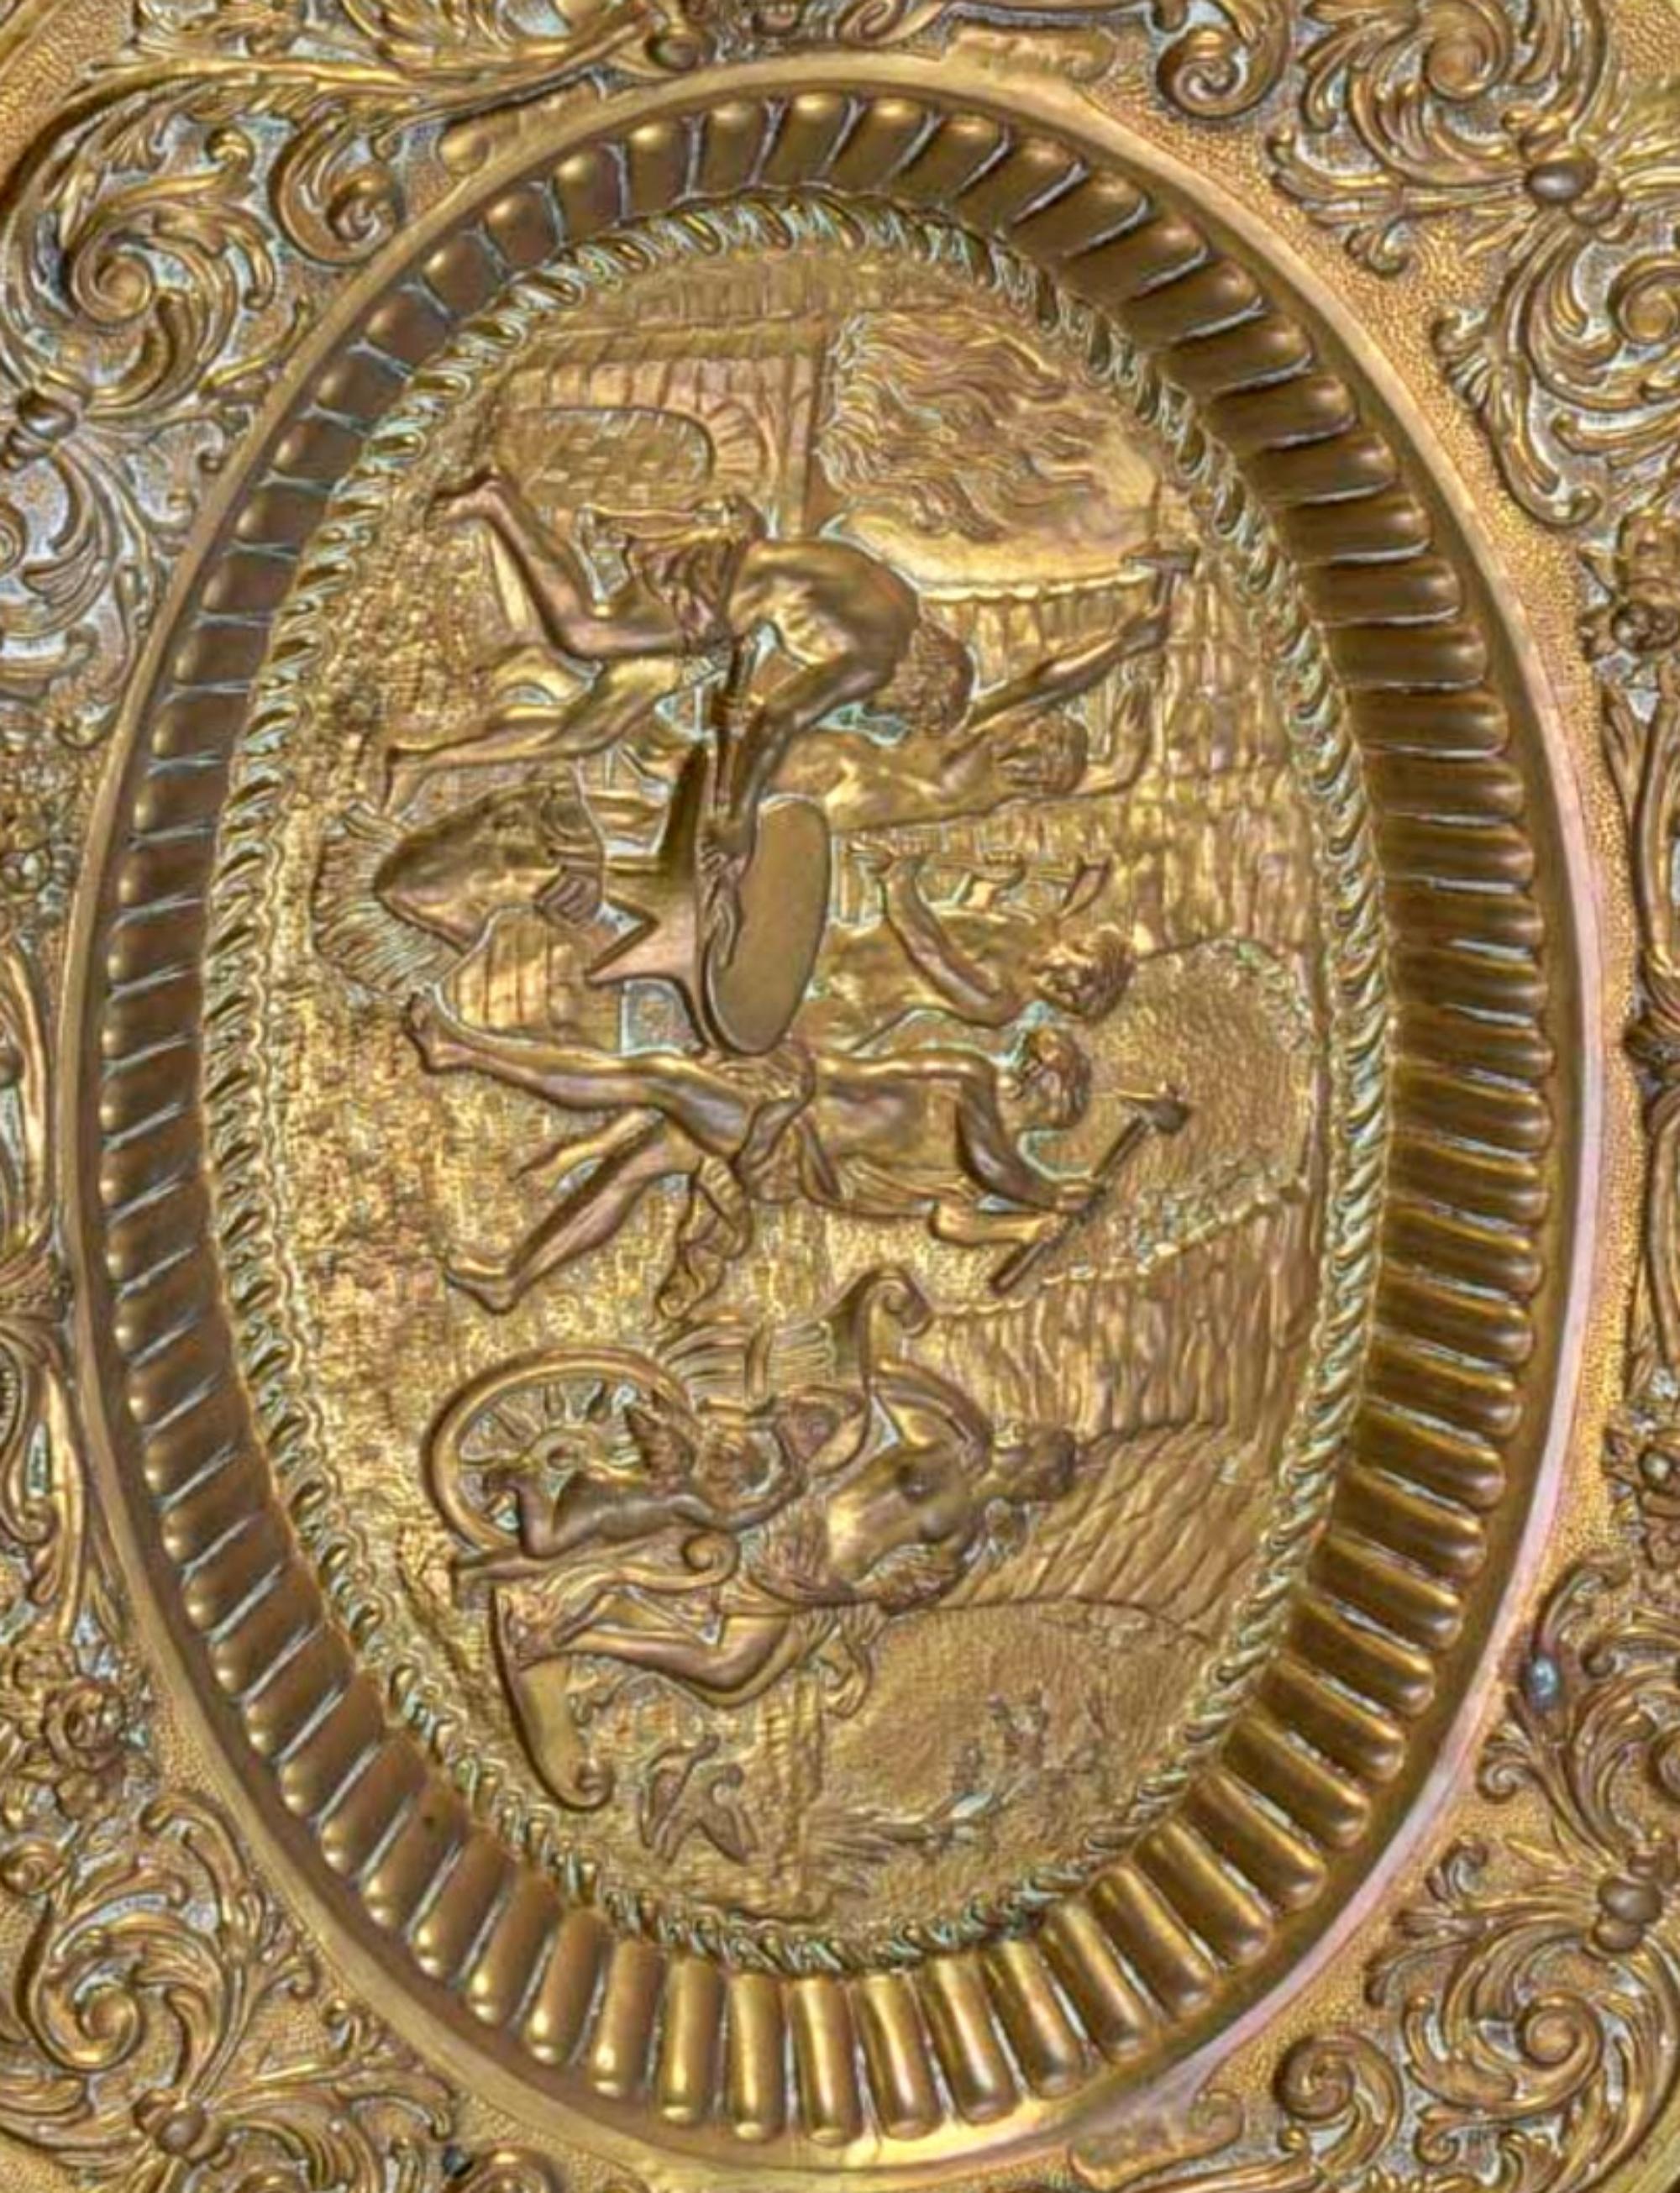 Italienischer OVAL-Apparat SALVER
19. Jahrhundert
Aus gelbem Metall, Reliefdekoration mit Pflanzenelementen und Masken, Medaillon 